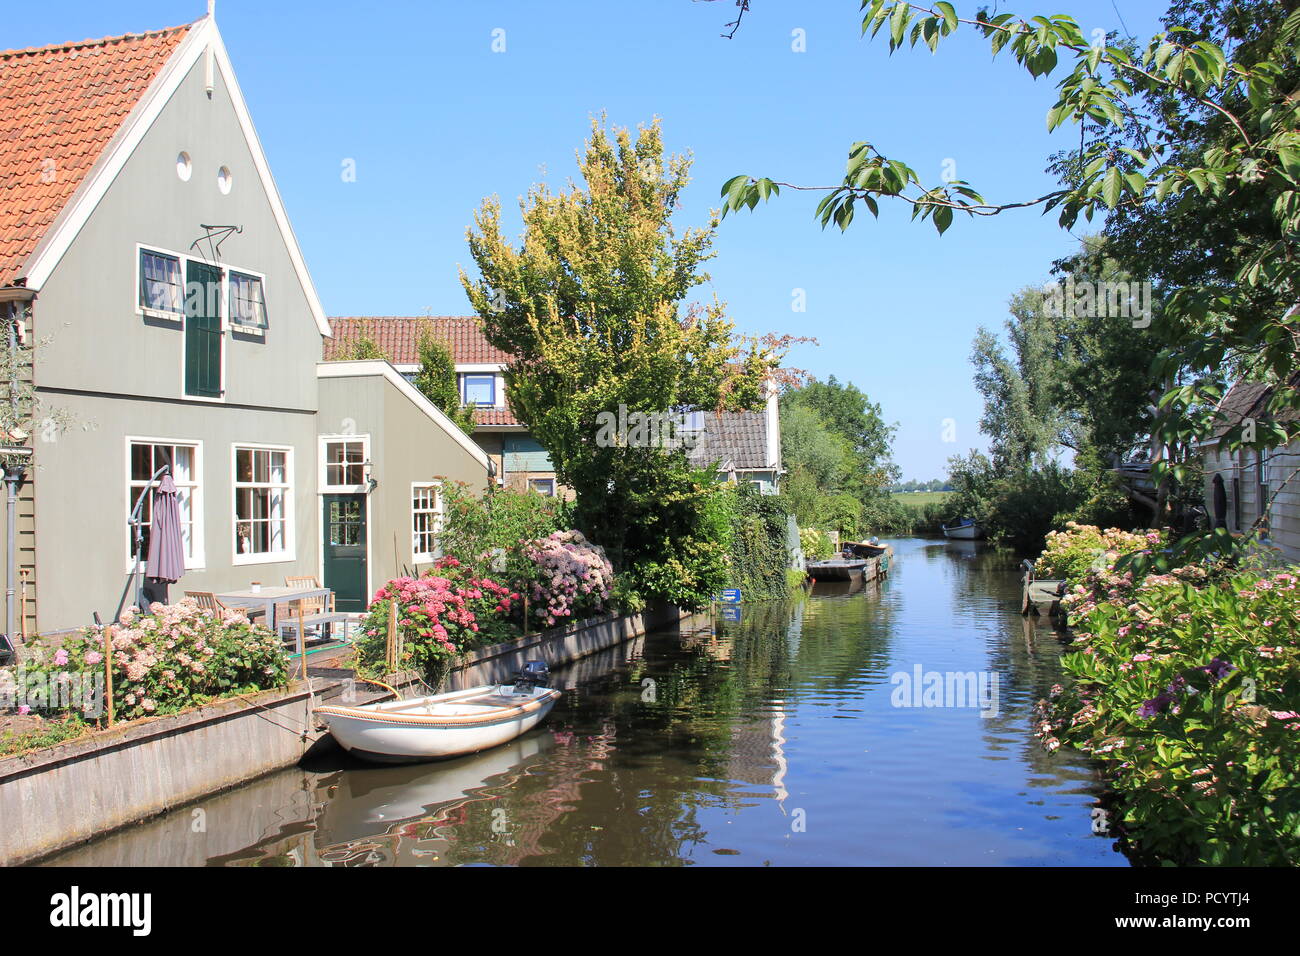 Broek in Waterland. The Netherlands Stock Photo